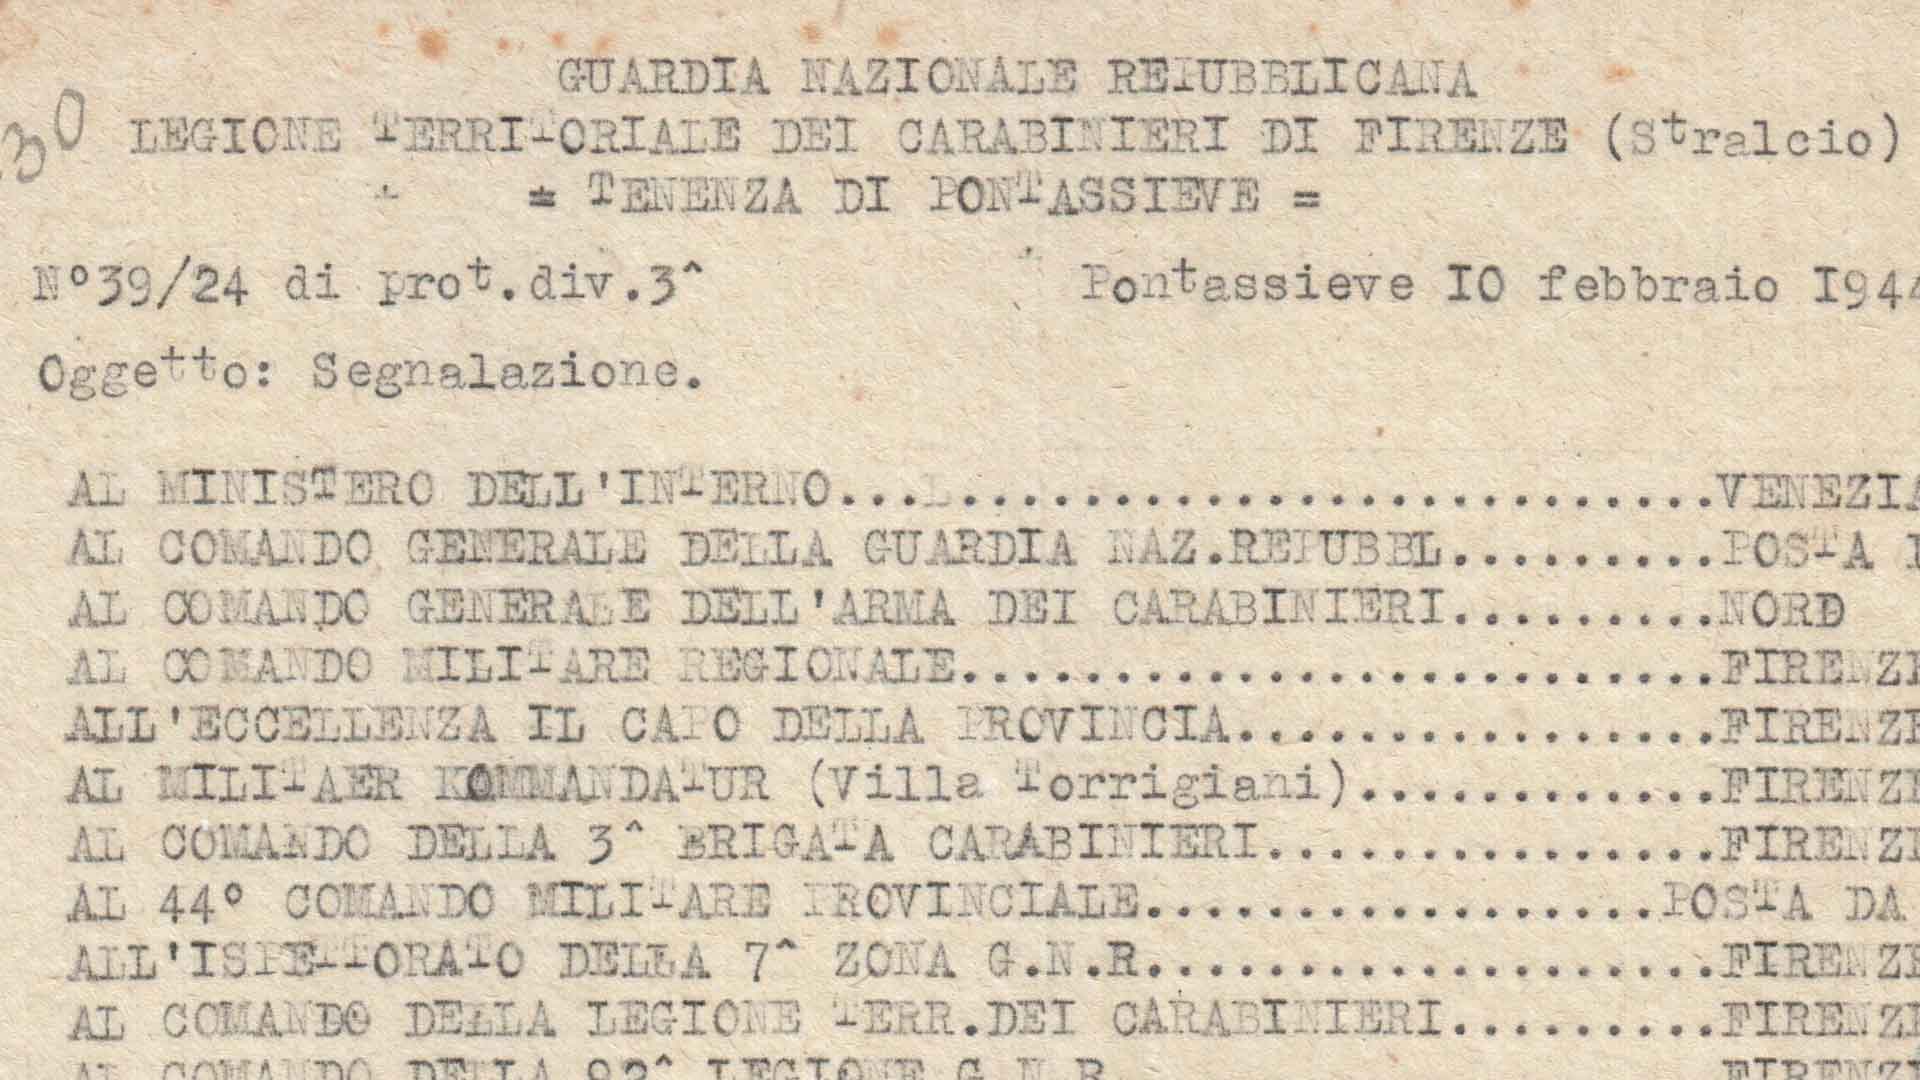 Relazione della GNR su un'azione partigiana nell'area di San Godenzo, 10
febbraio 1944